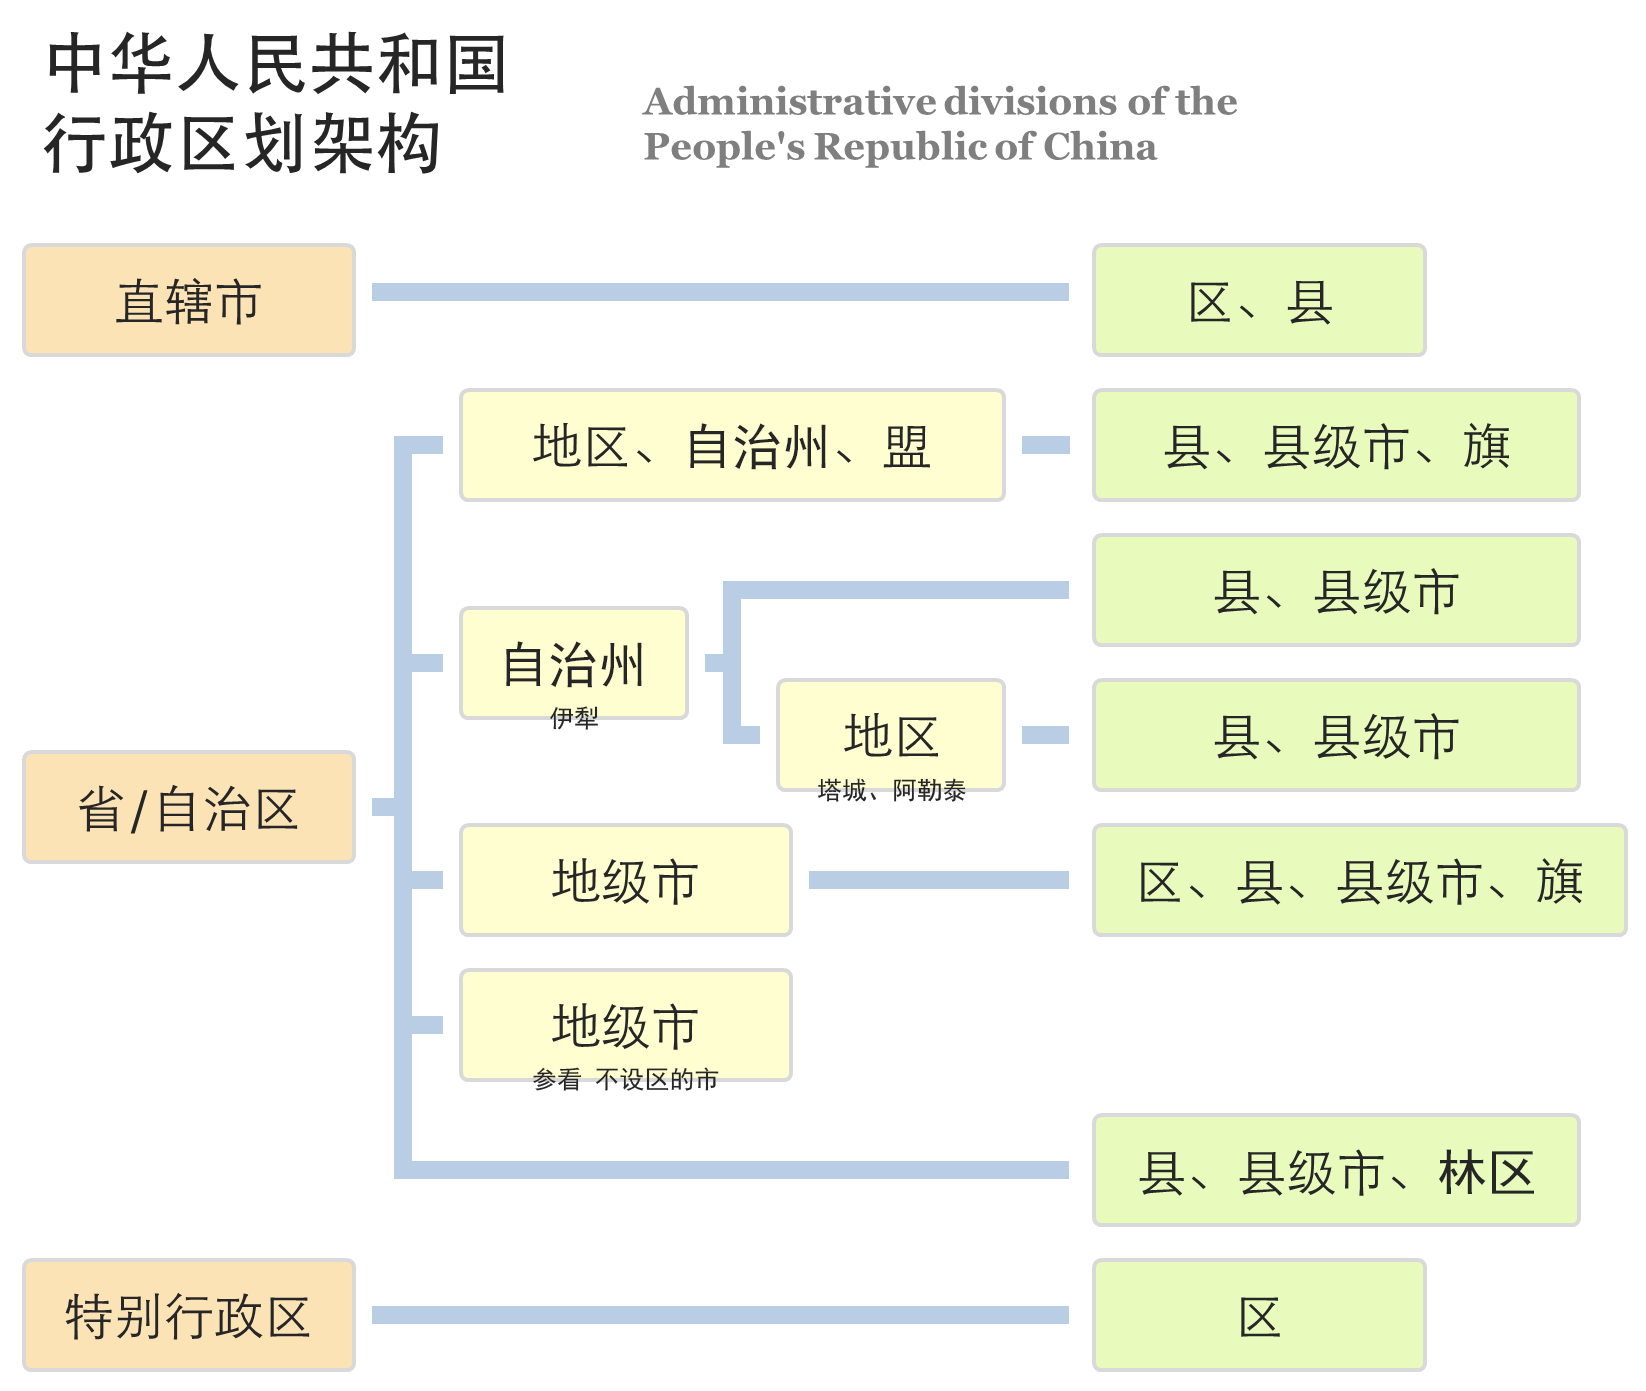 中华人民共和国行政区划架构图